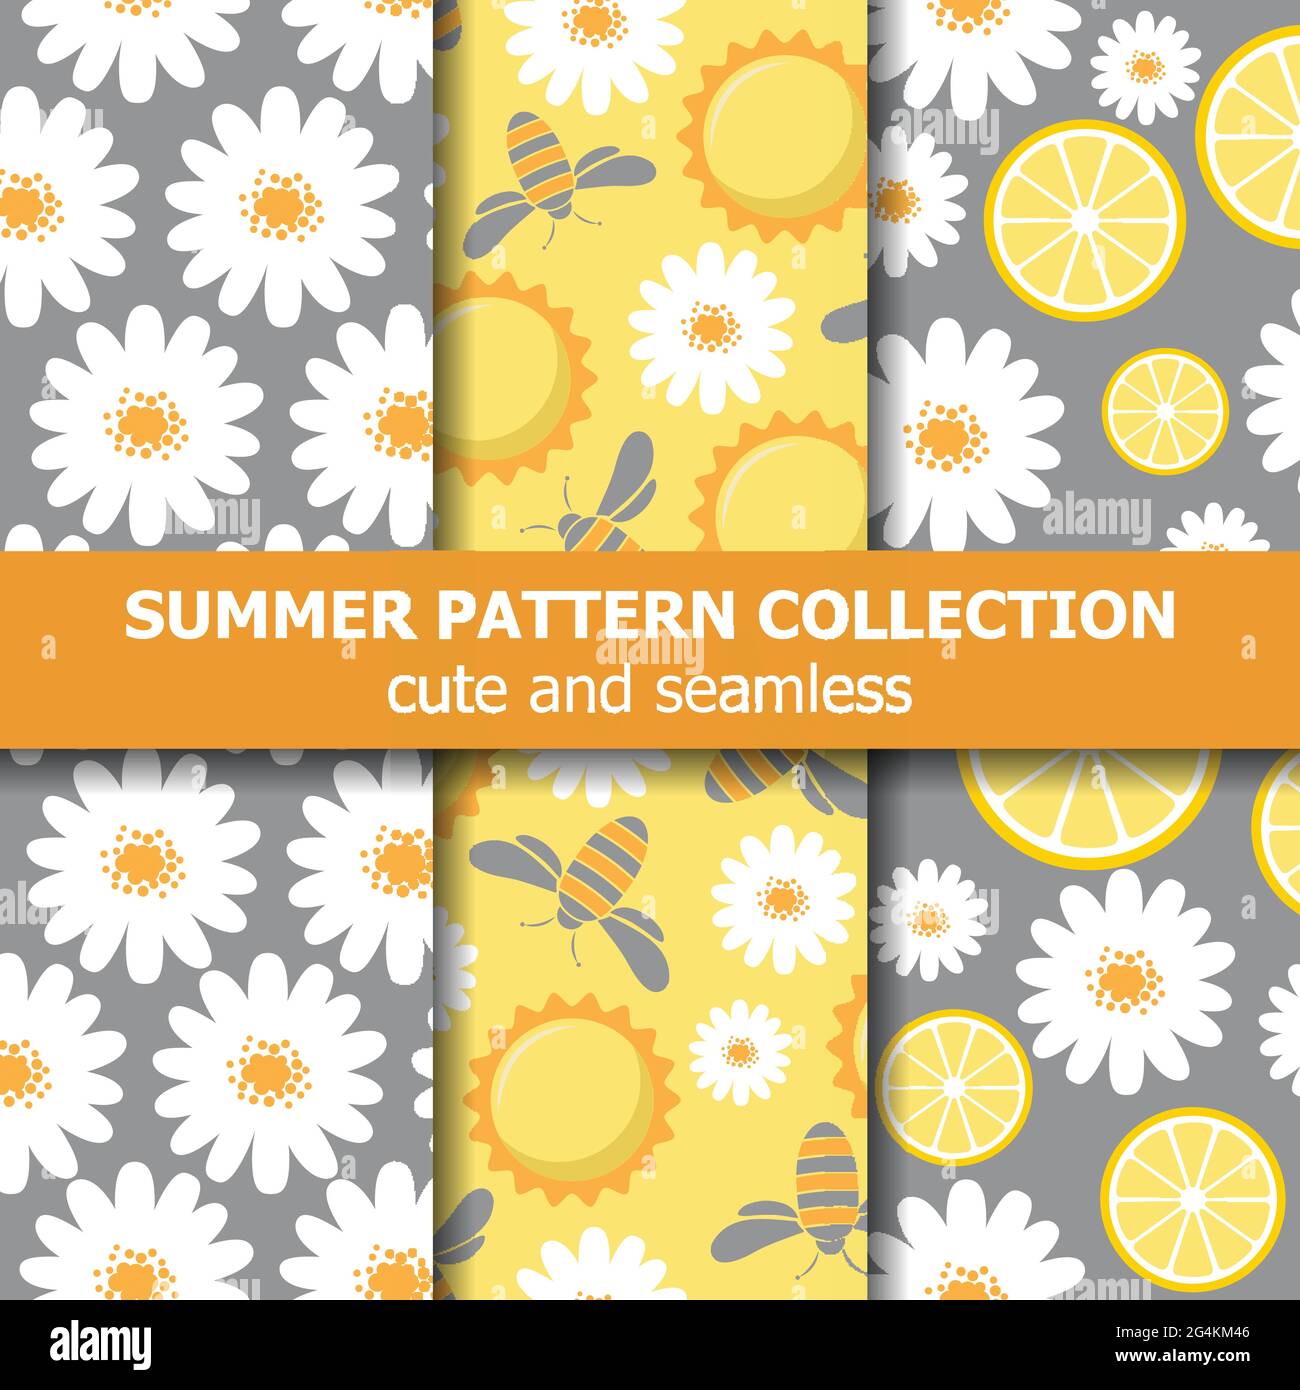 Schöne Musterkollektion mit Gänseblümchen, Zitronen, Bienen und Sonne. Sommer-Bannerkollektion. Vektor Stock Vektor